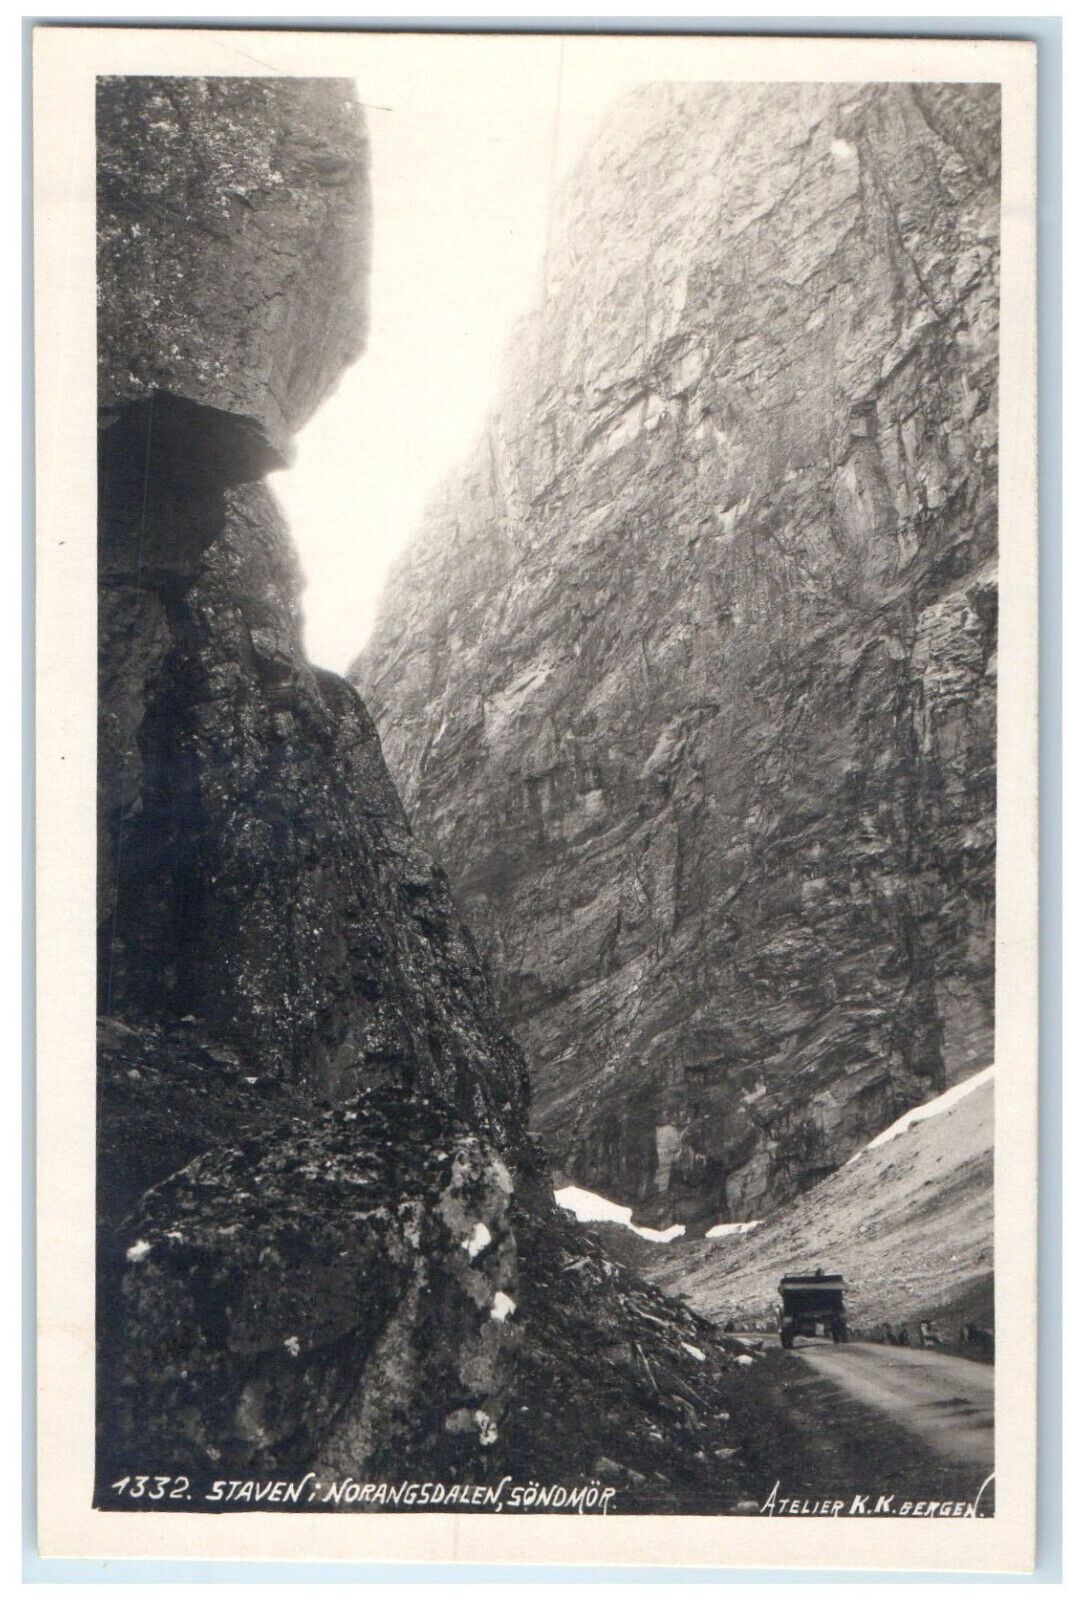 c1920\'s Norangsdalen Sondmor Staven Germany Unposted RPPC Photo Postcard